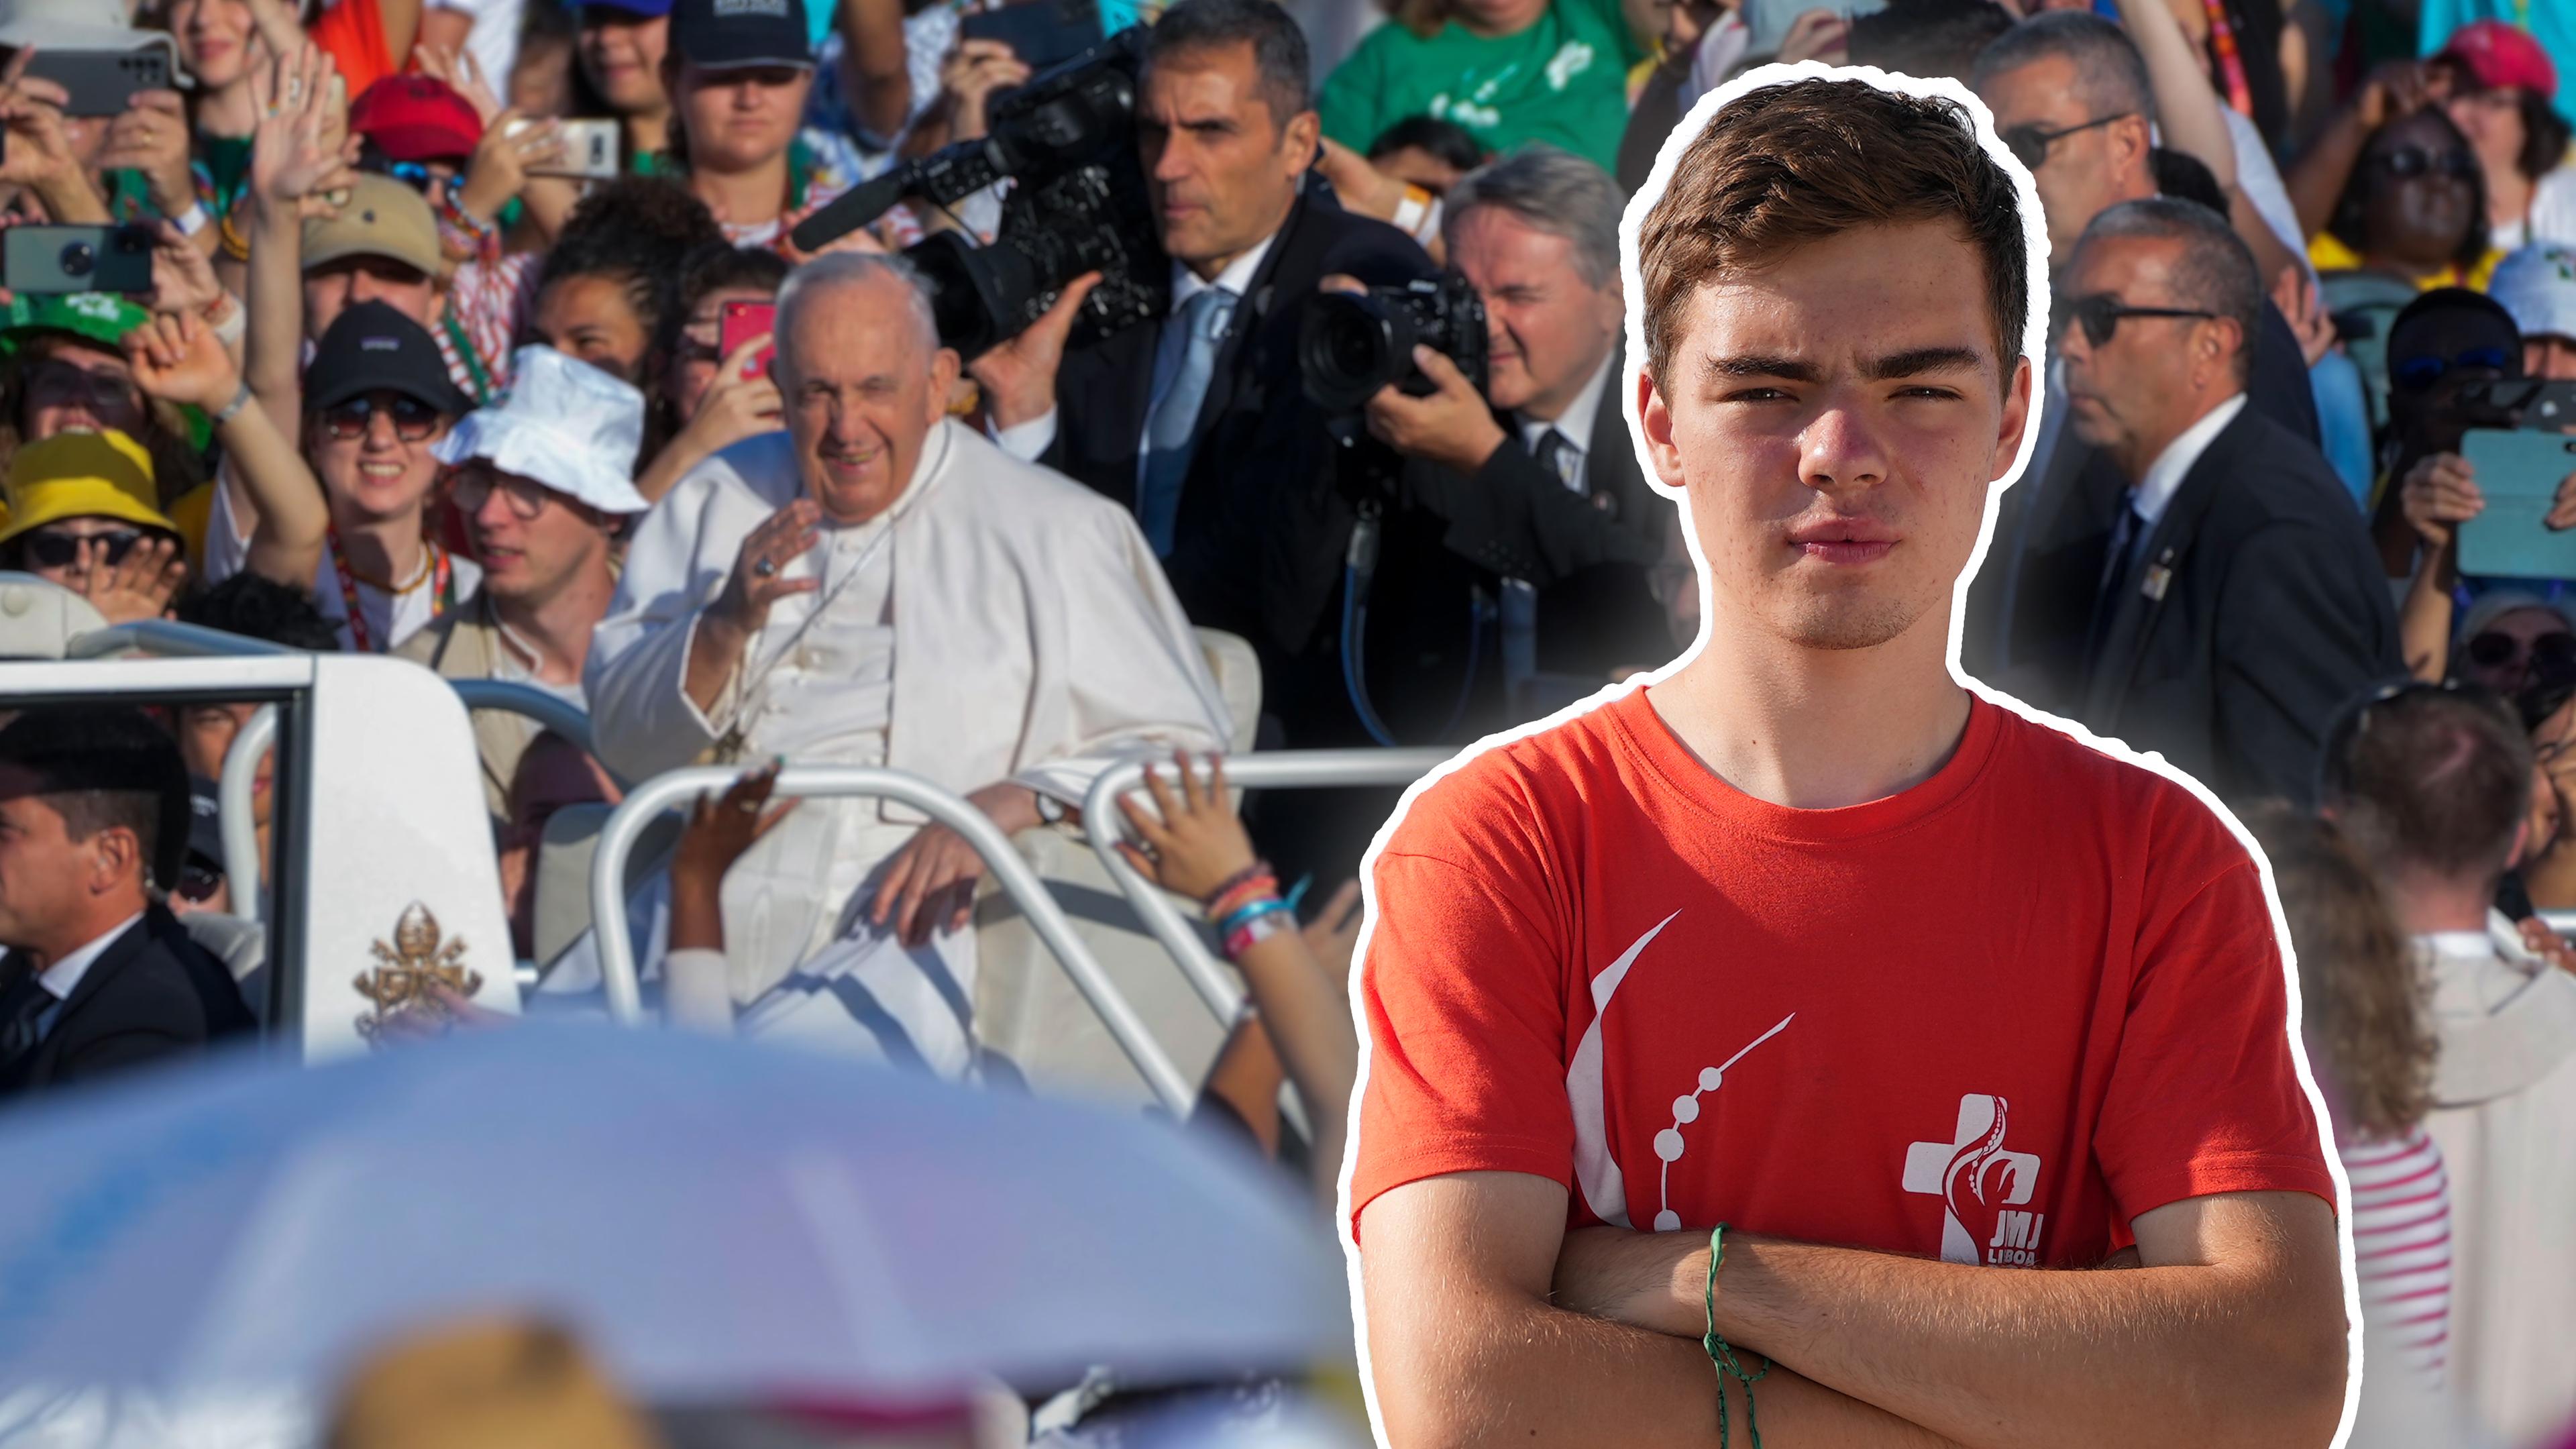 Fotomontage: Christian schaut mit verschränkten Armen und ernster Miene in die Kamera. Im Hintergrund Papst Franziskus umjubelt von der Menge.